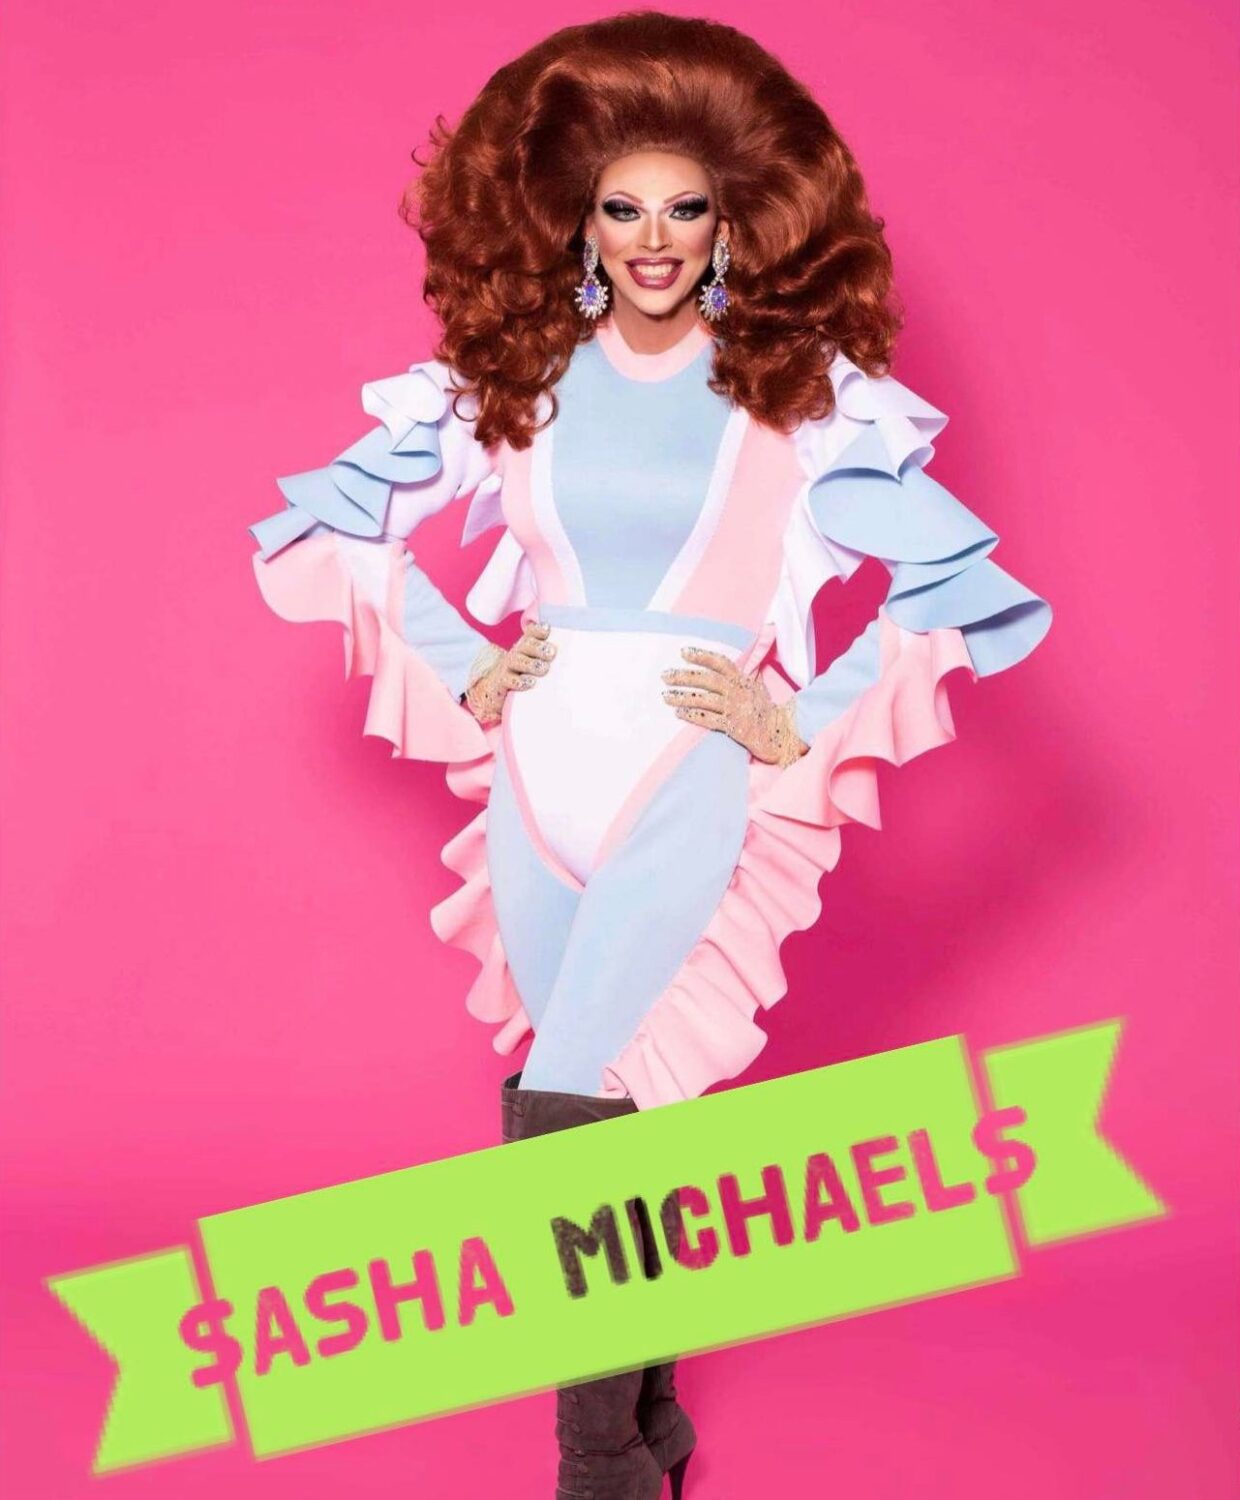 Sasha Michaels